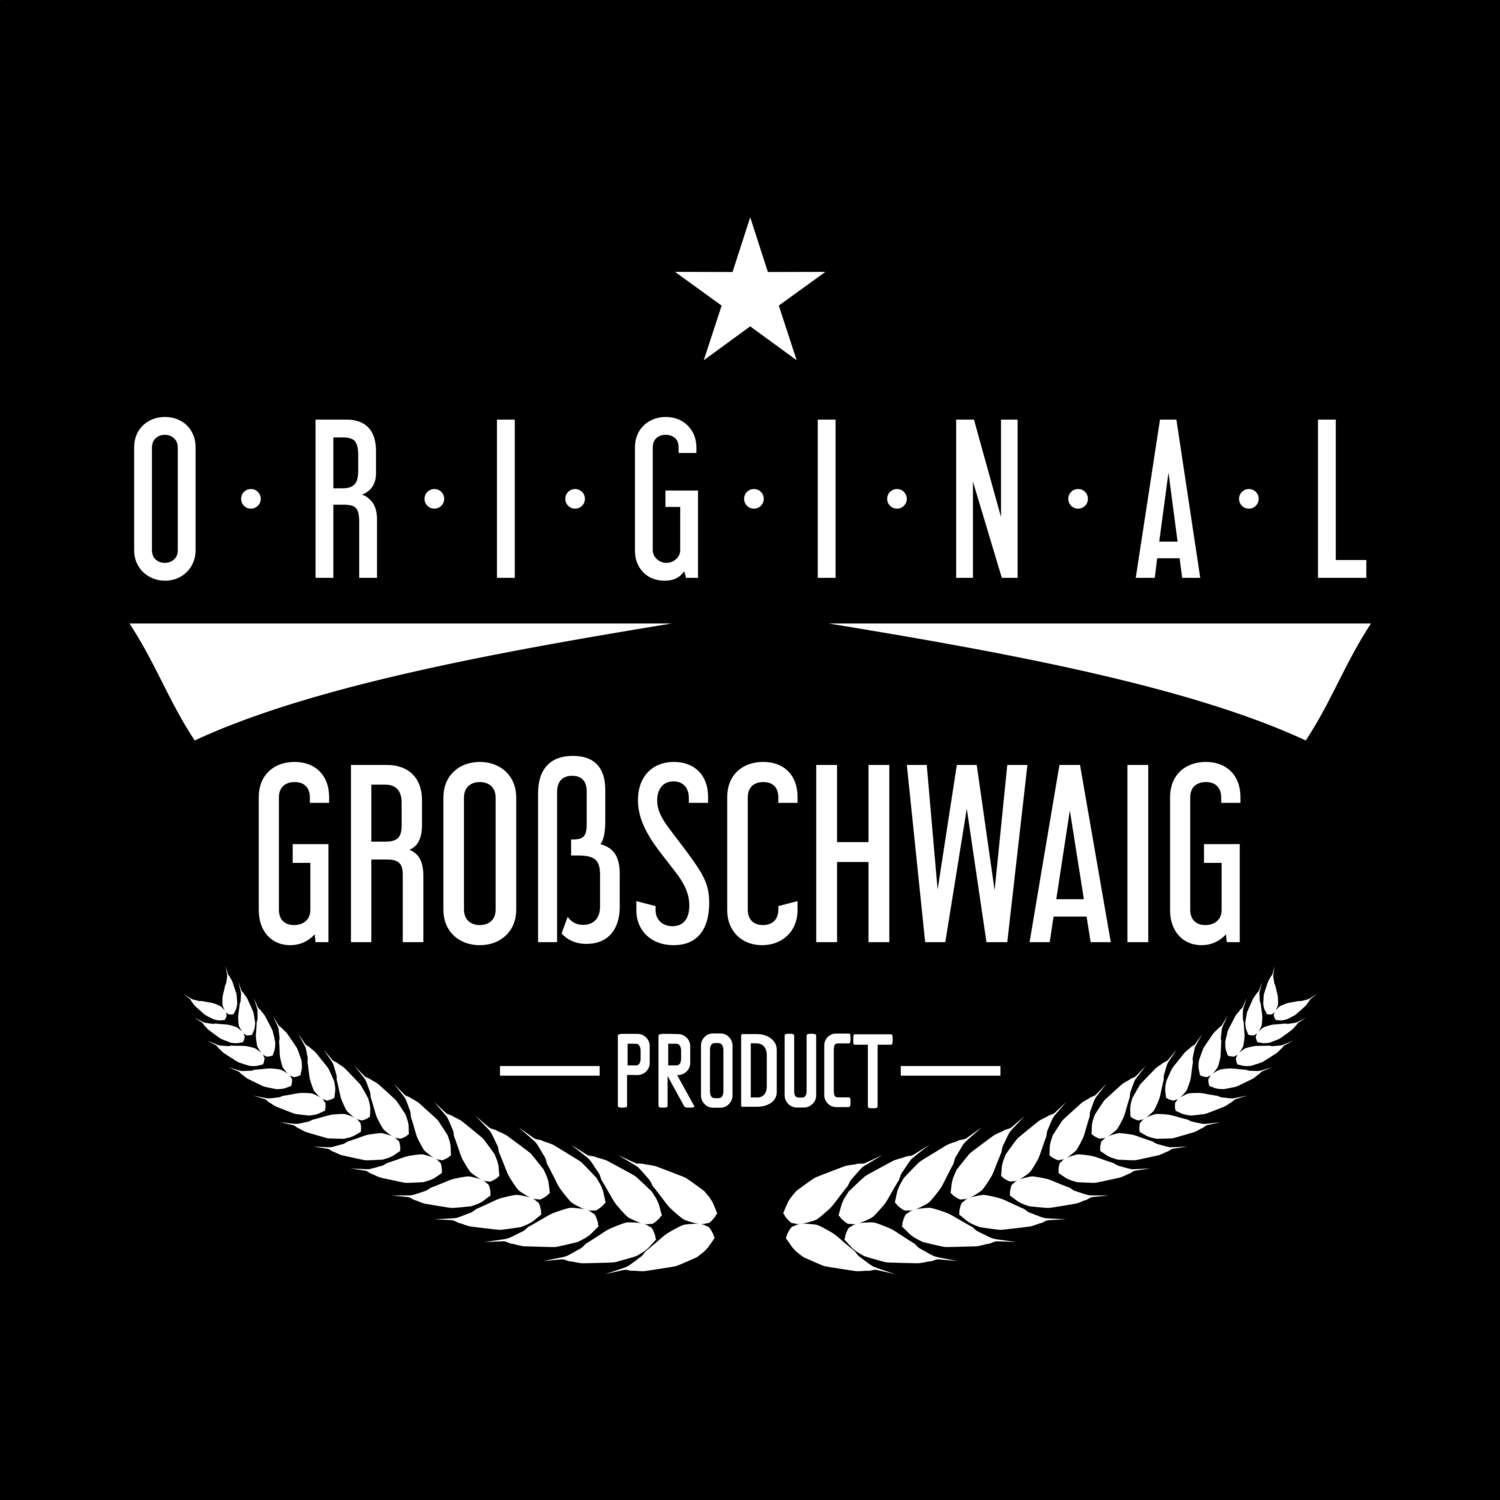 Großschwaig T-Shirt »Original Product«